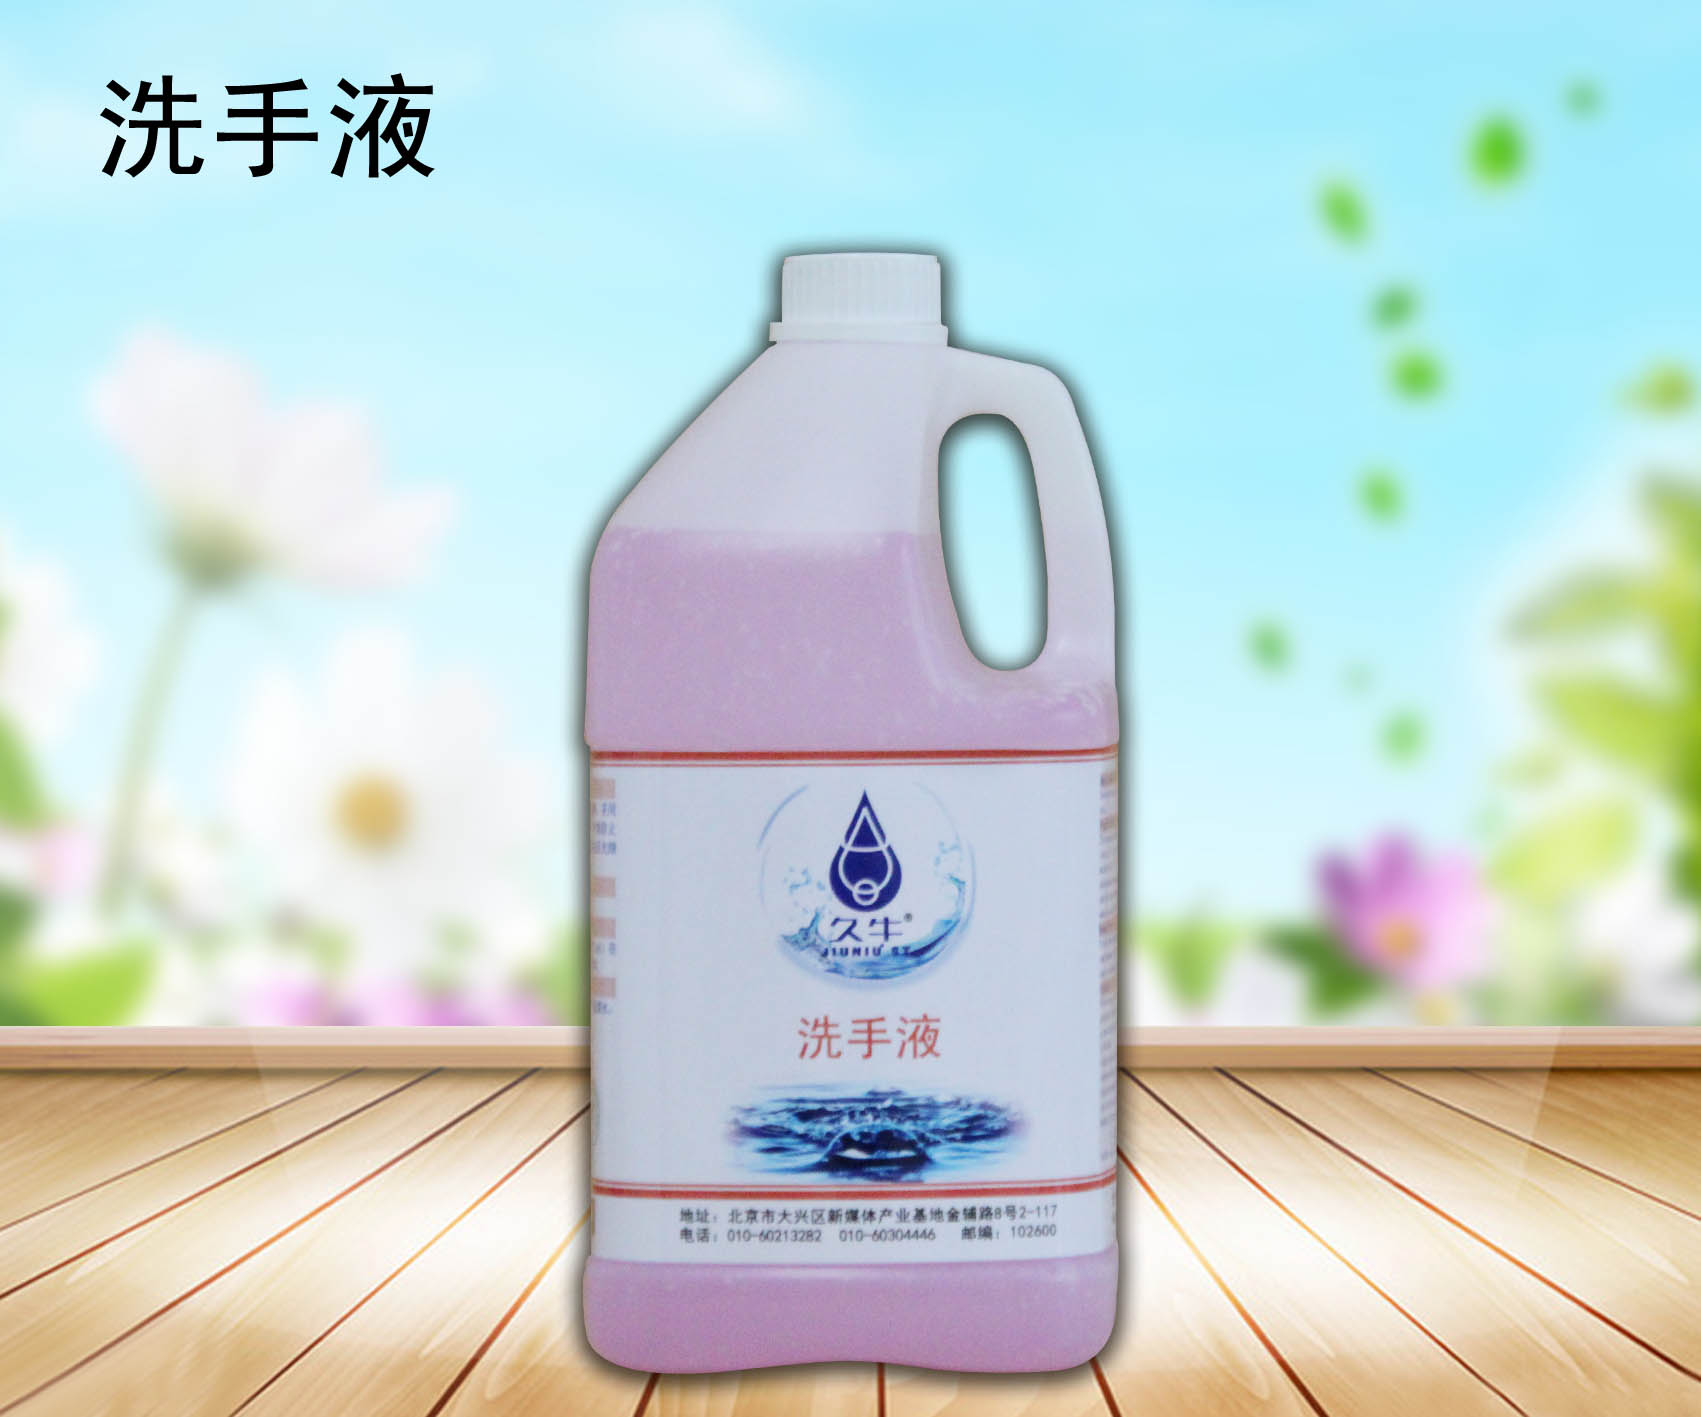 厂家批发洗手液北京久牛科技有限公司图片